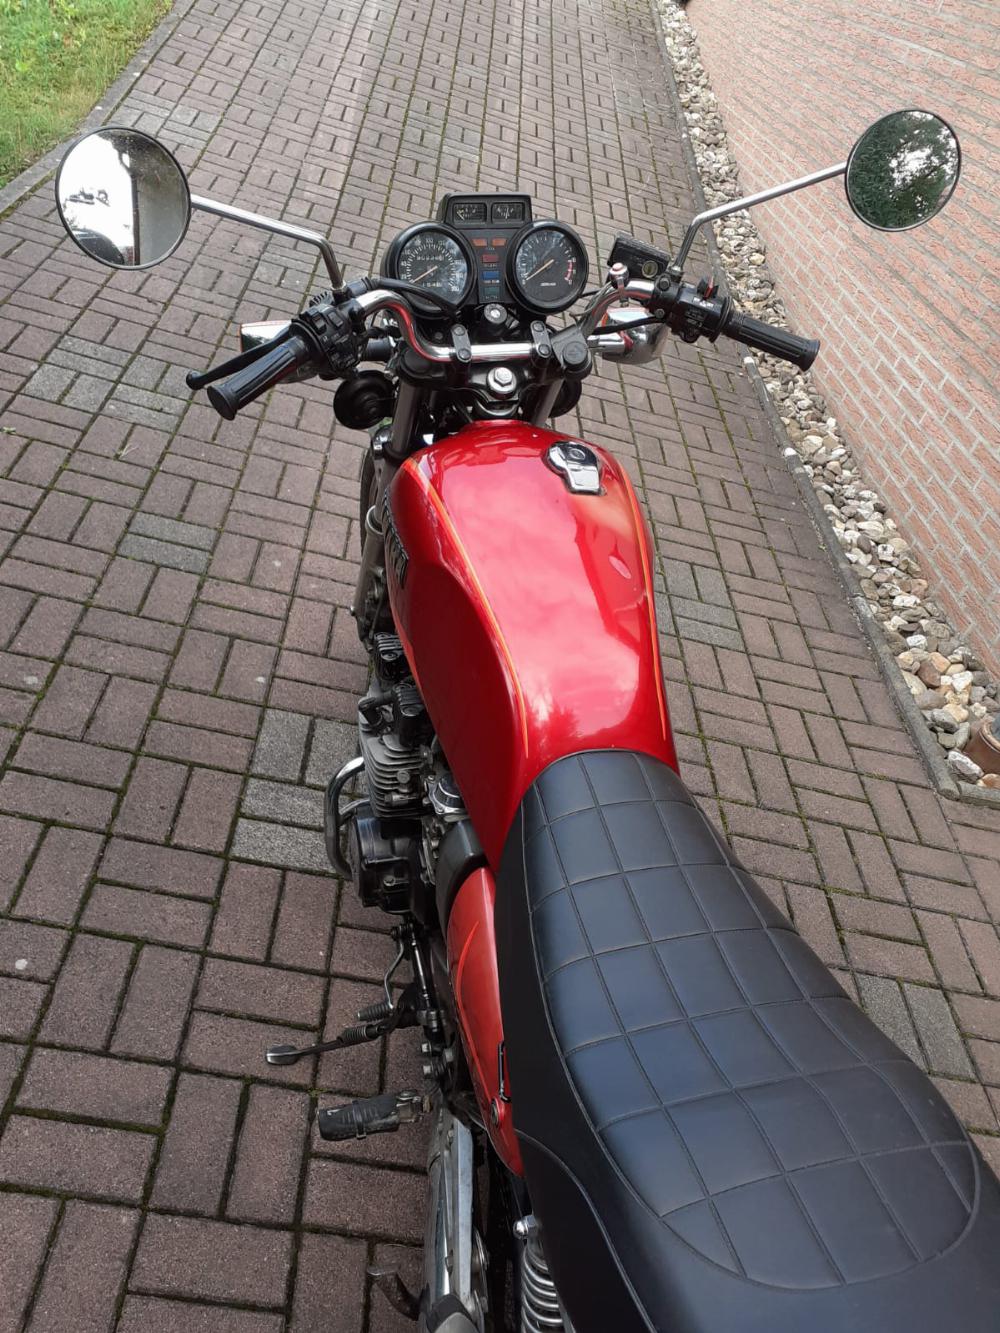 Motorrad verkaufen Yamaha XJ 550 Ankauf